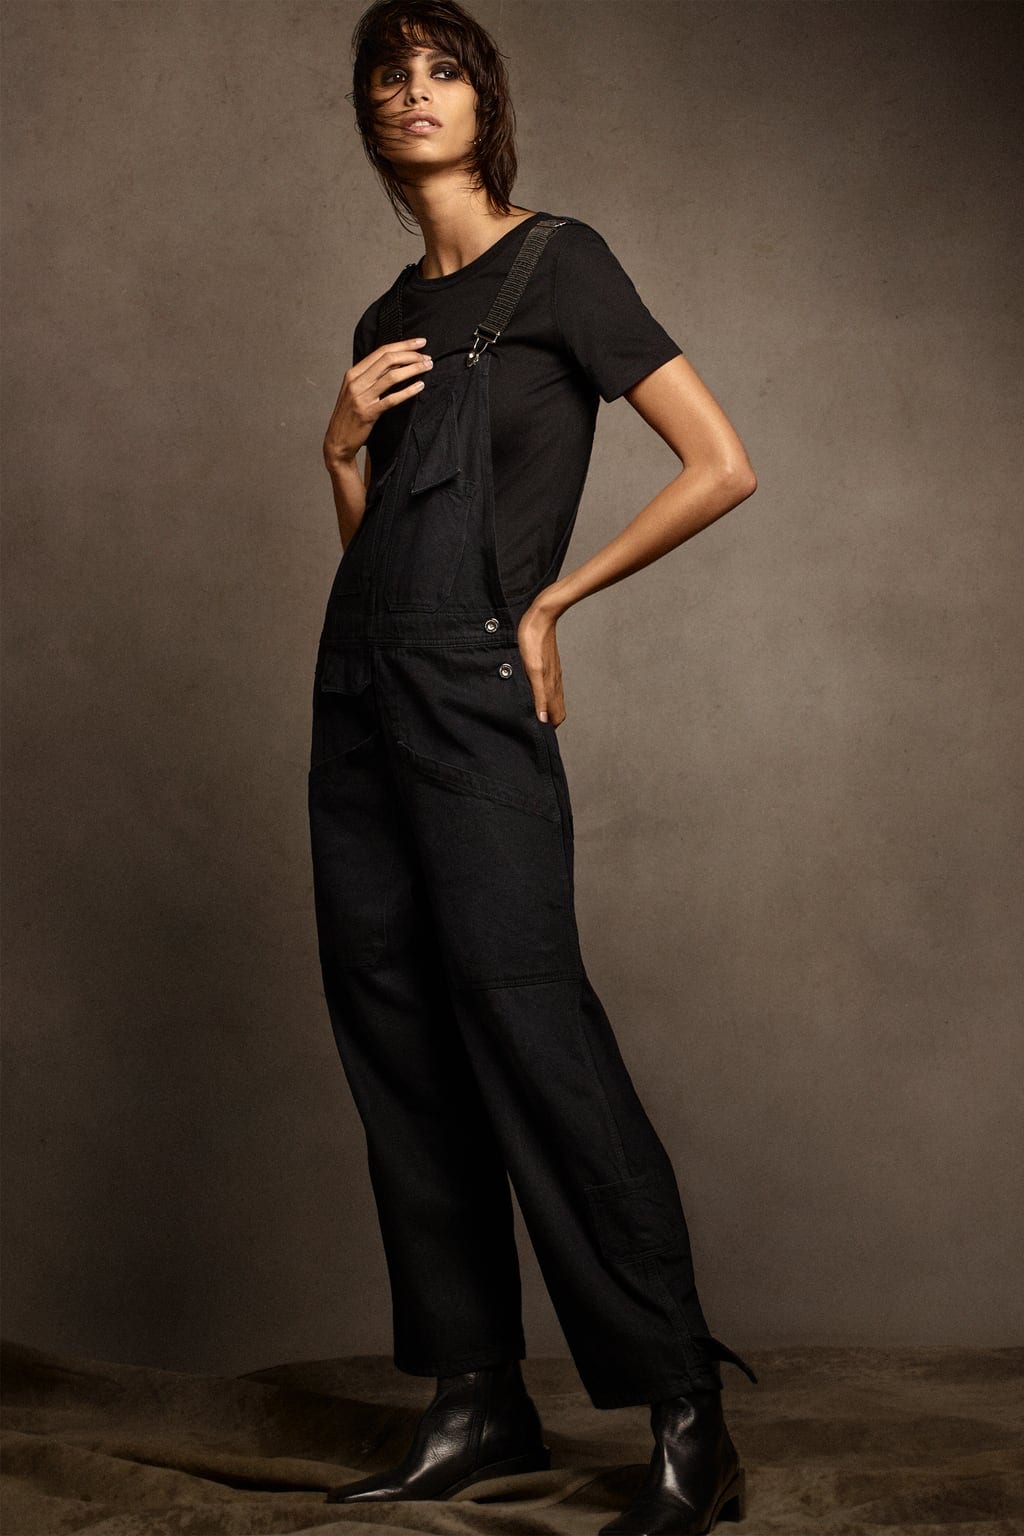 La modelo argentina Mica Argañaraz protagoniza el nuevo lookbook de Zara.